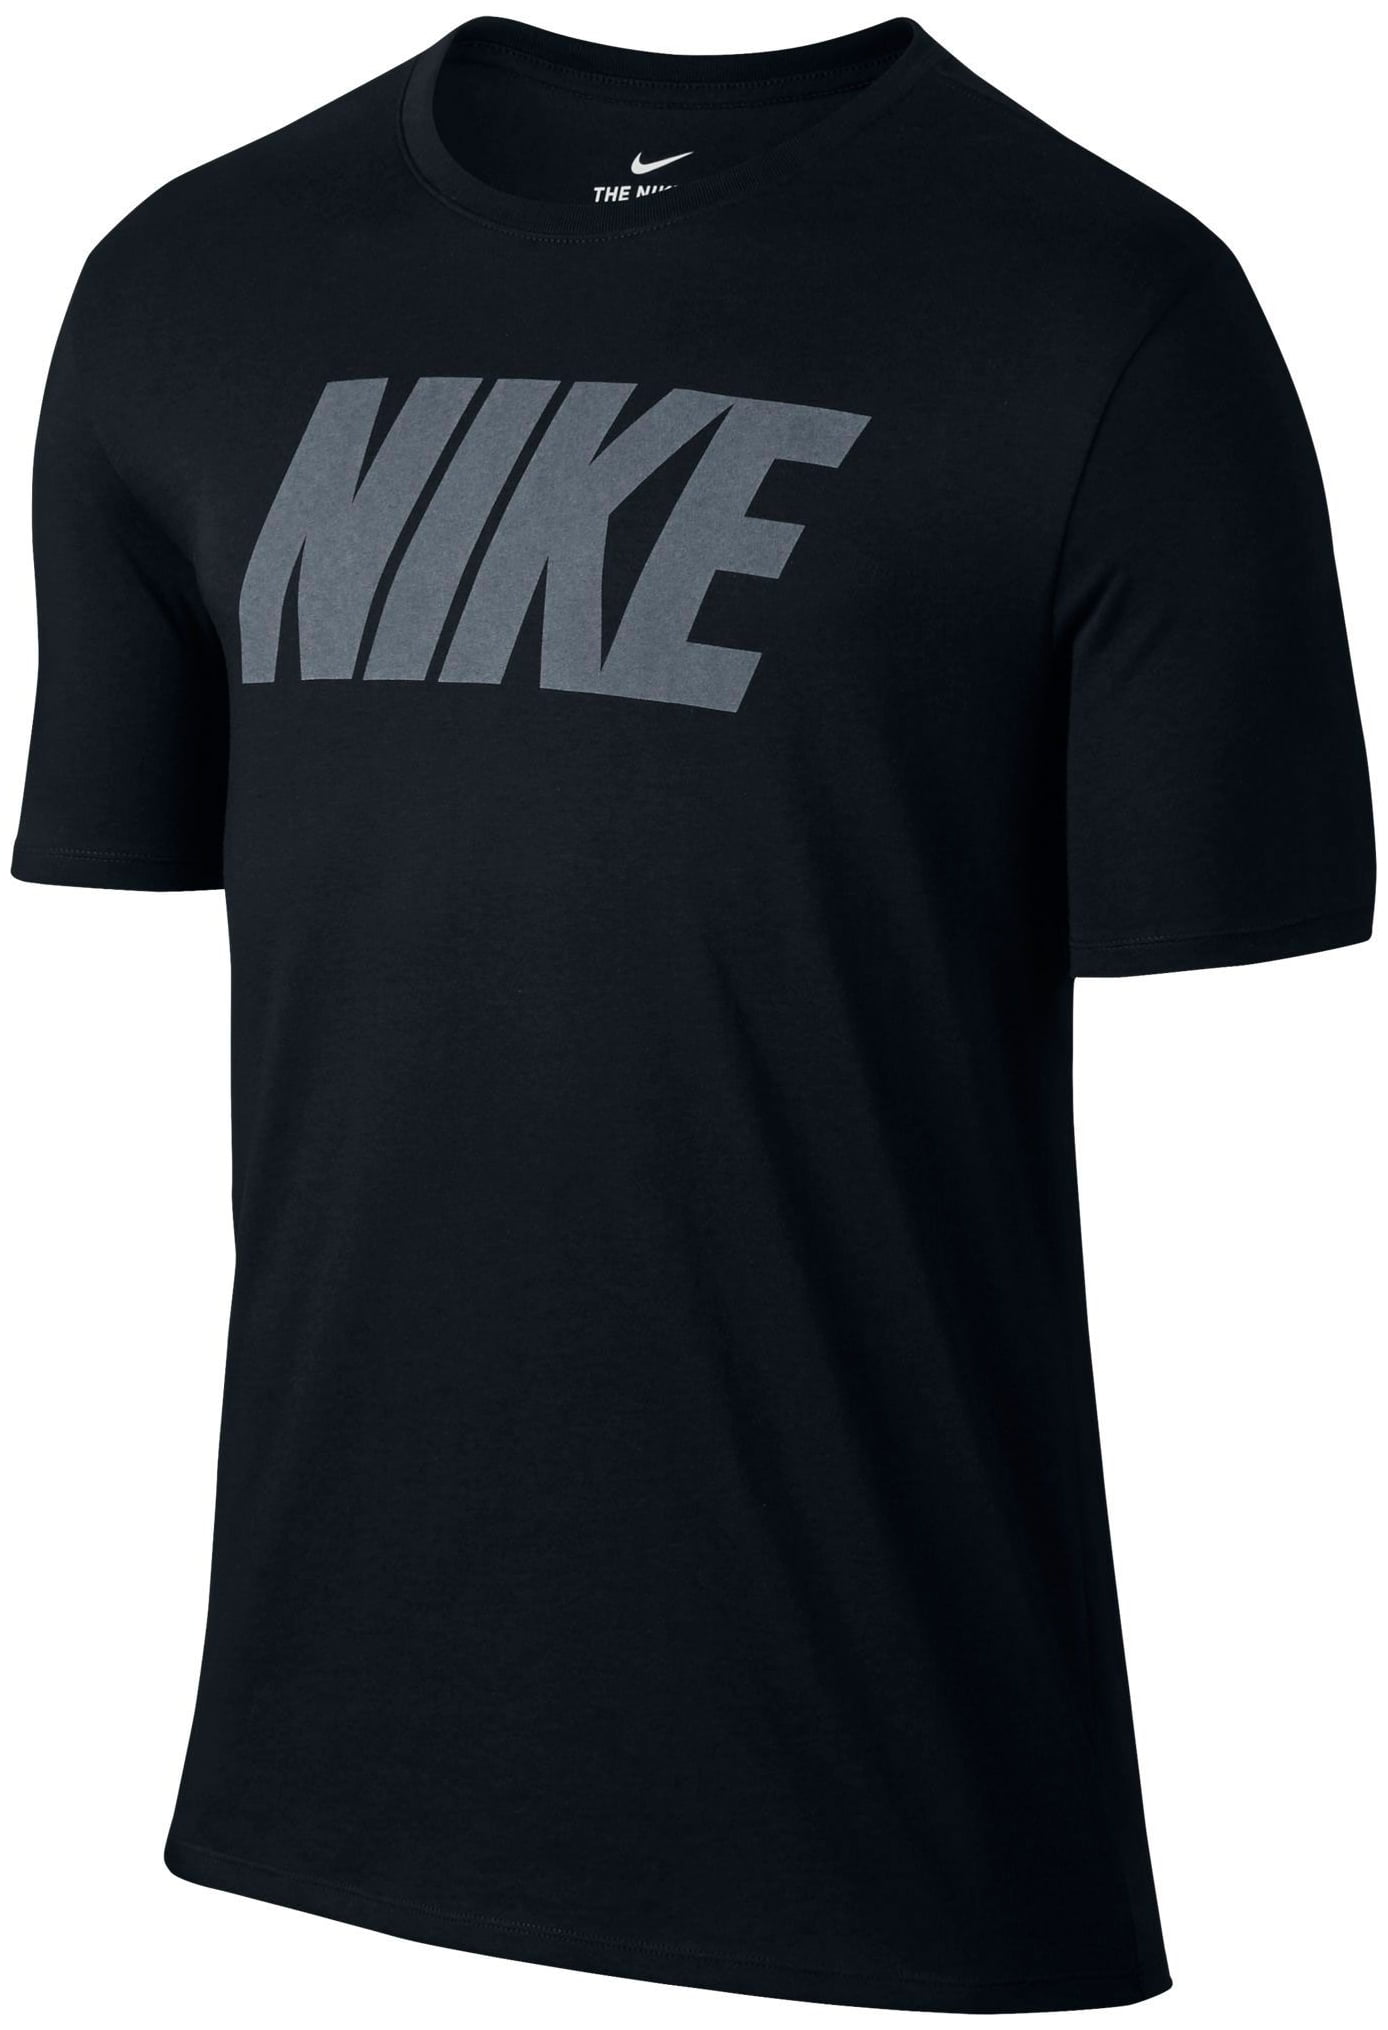 Nike - Nike Men's Dry Block Graphic T-Shirt - Black/White - Size L ...